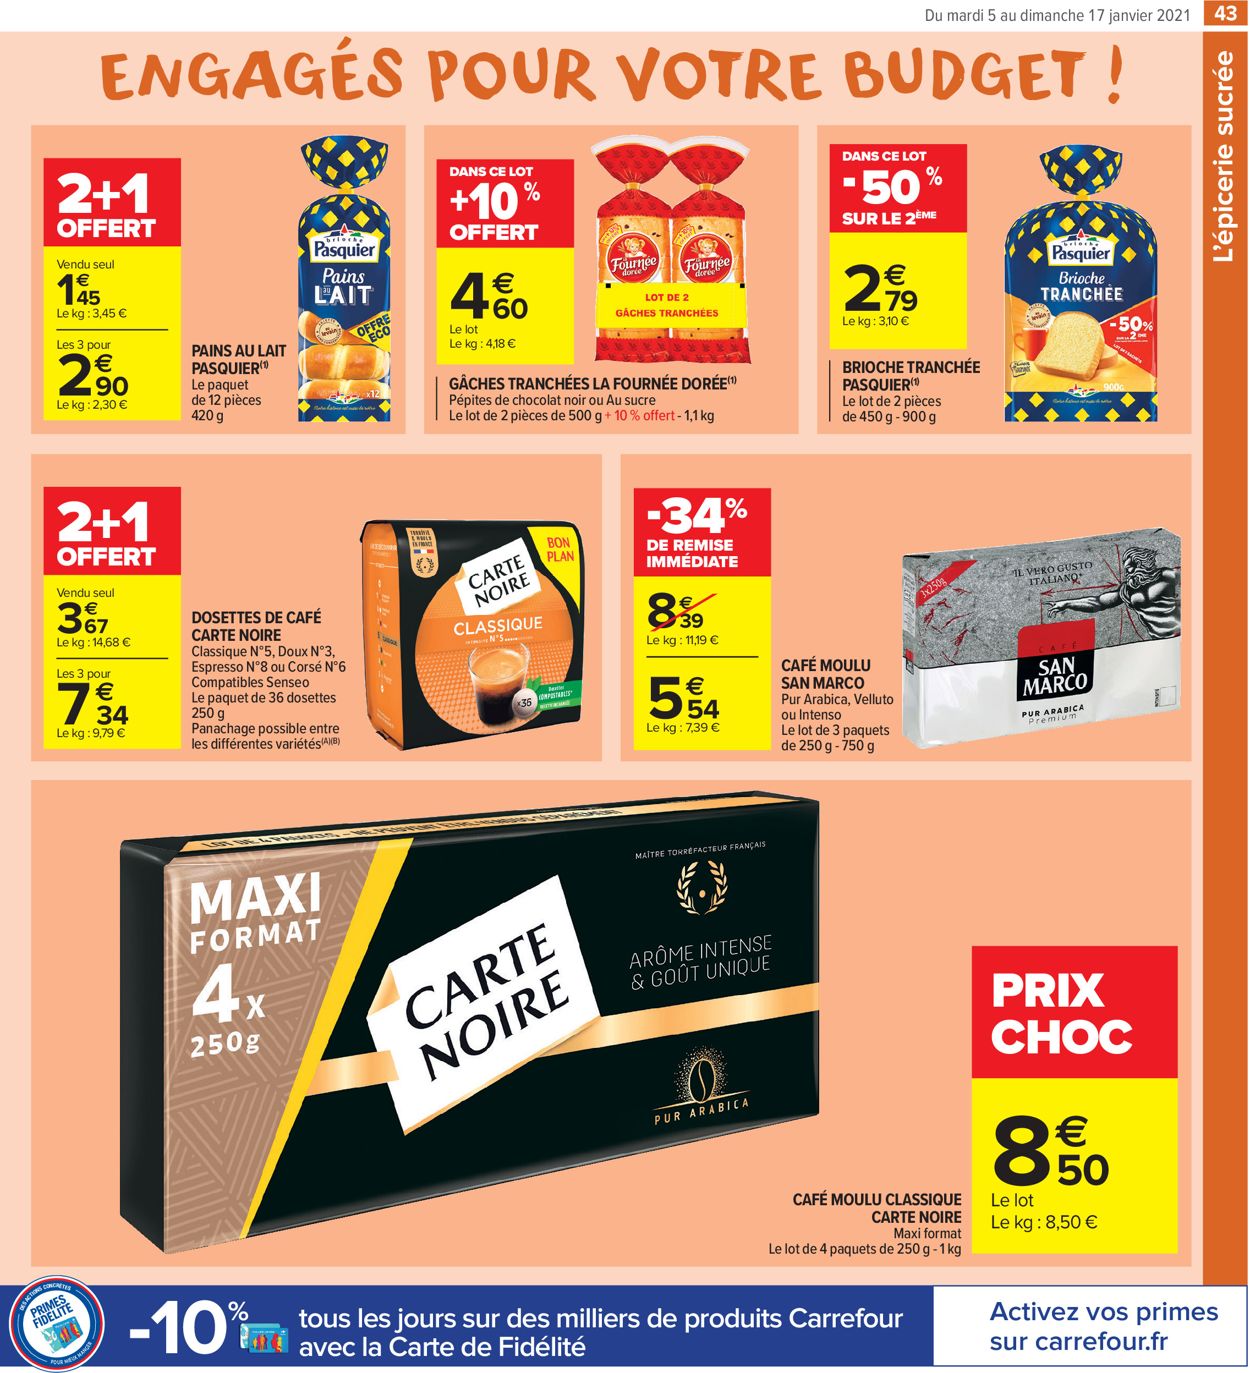 Carrefour Résolument engagés pour votre budget 2021 Catalogue - 05.01-17.01.2021 (Page 43)